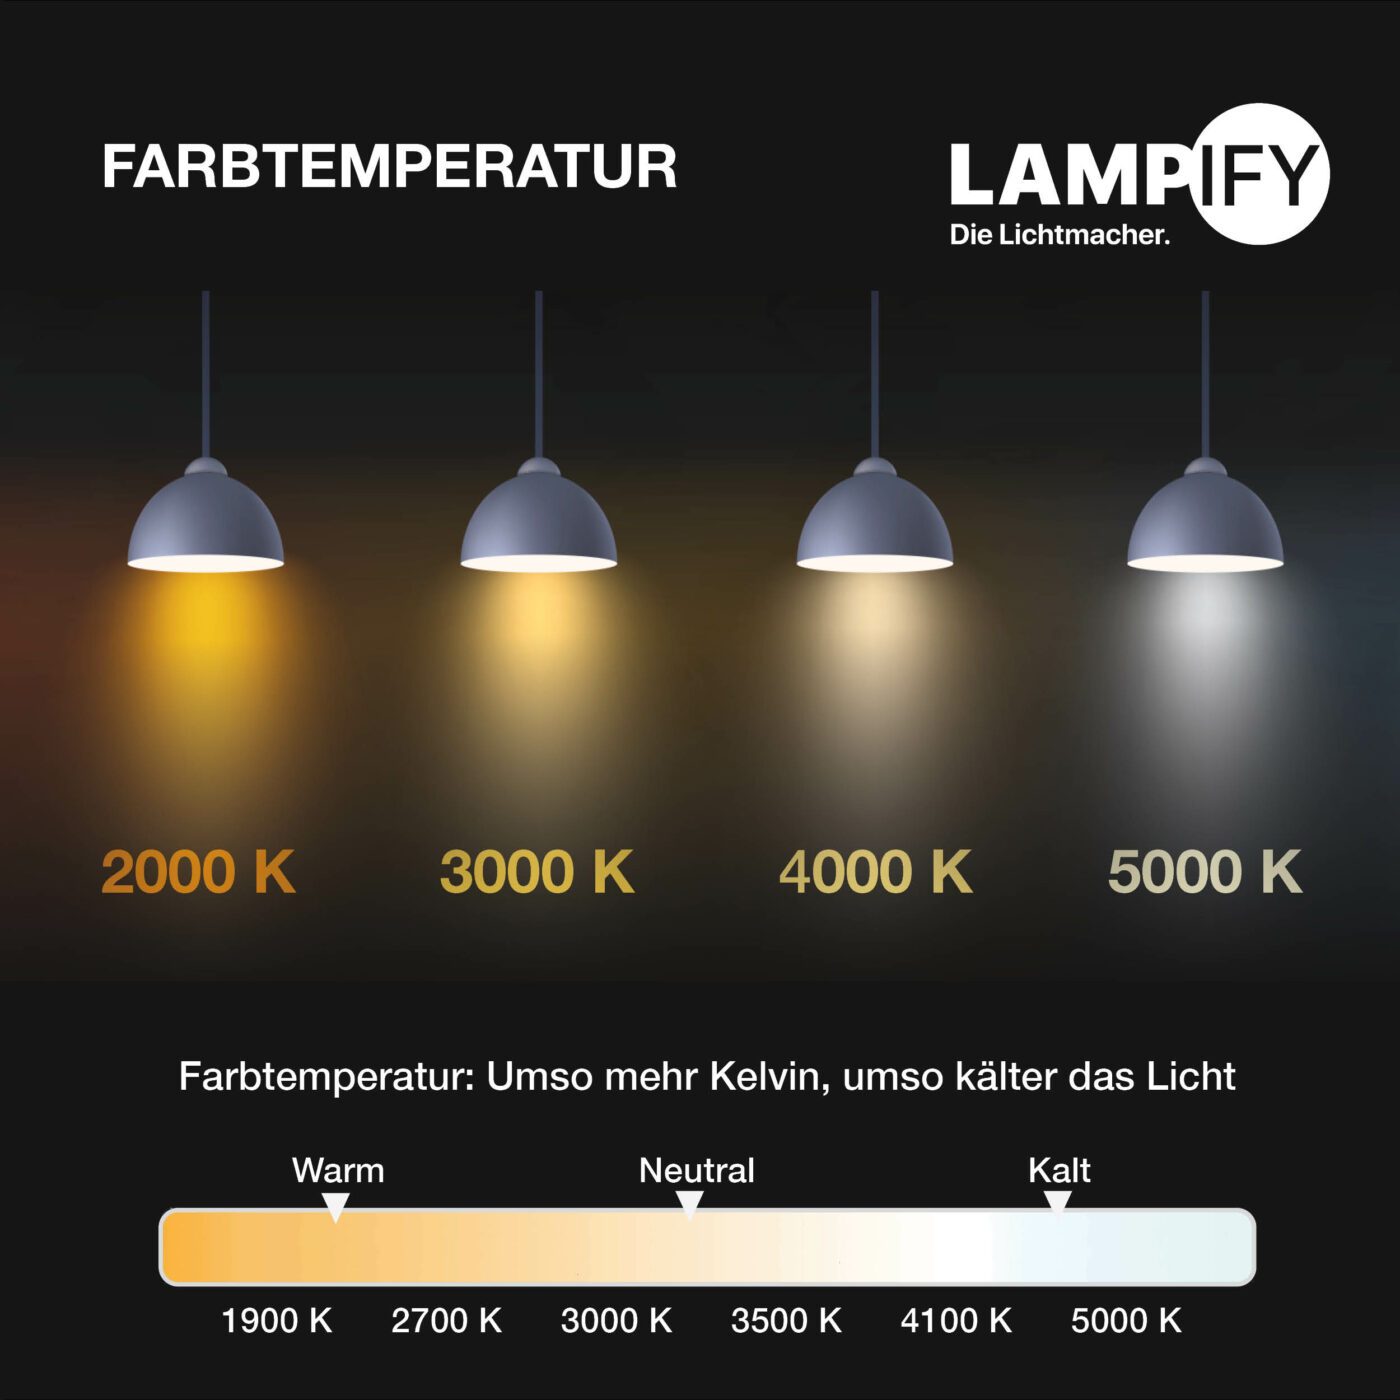 Lampify Farbtemperatur Guide